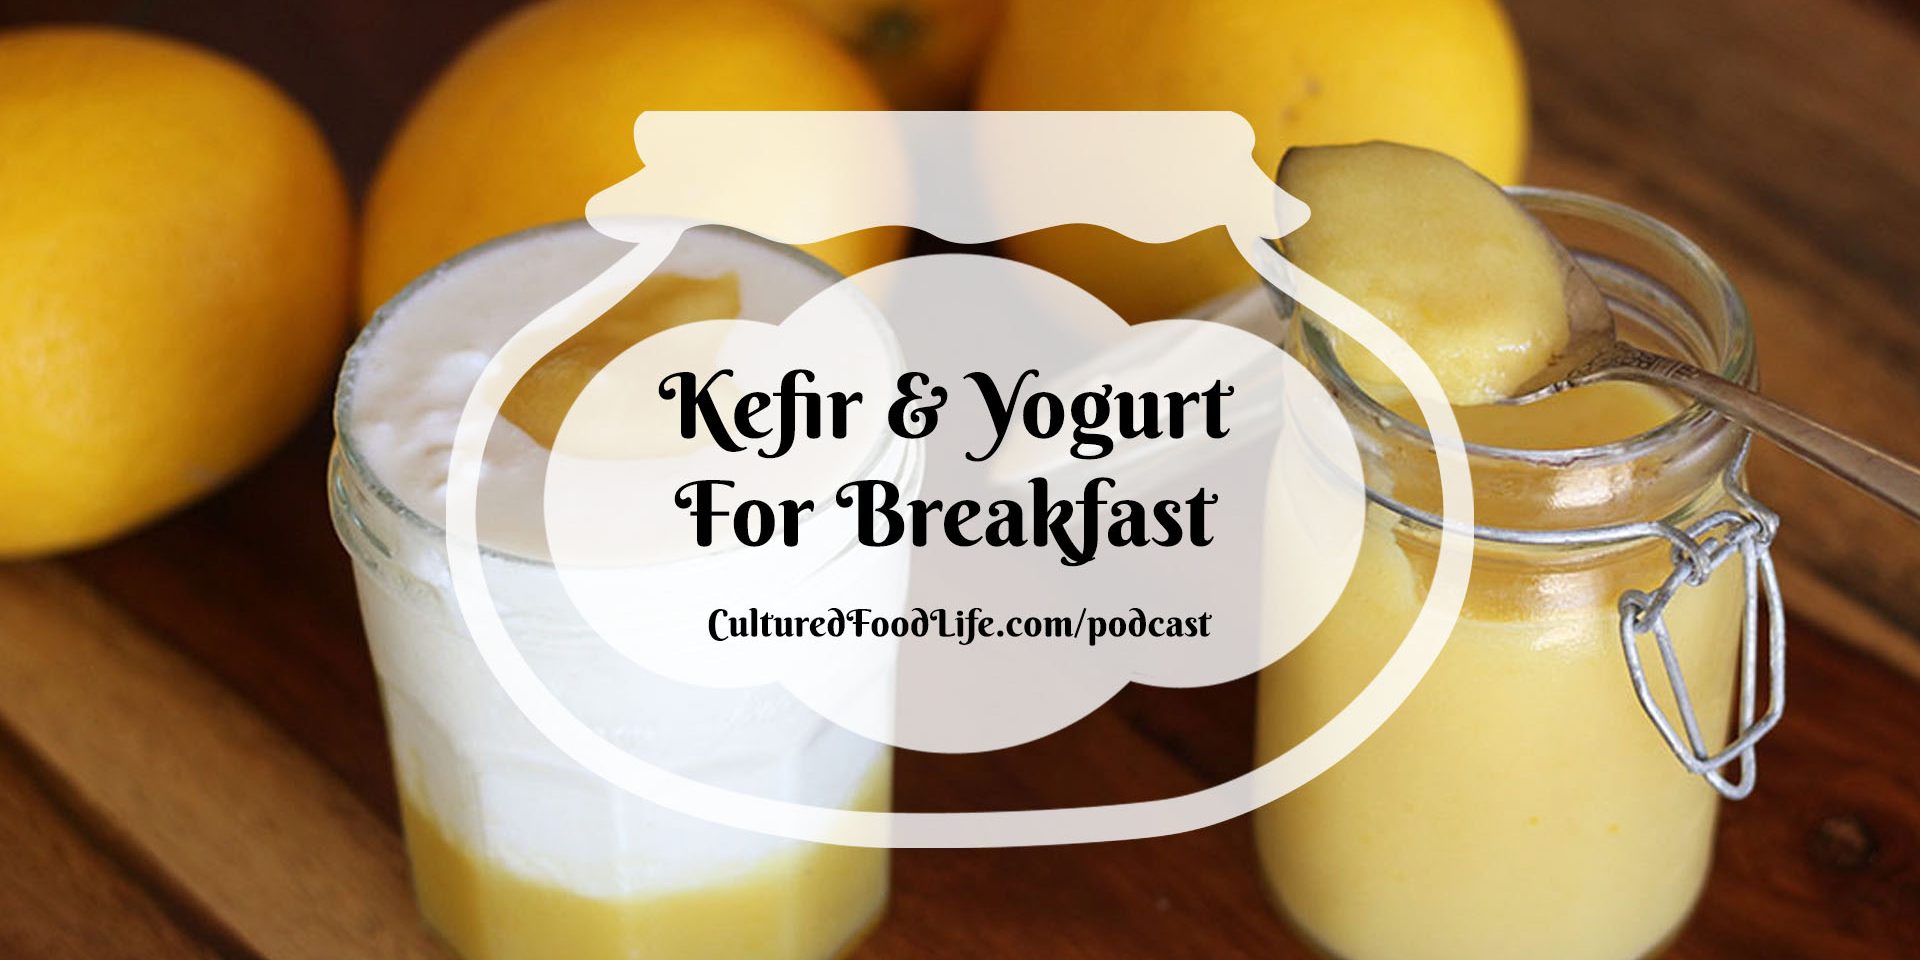 How to Make Kefir Mousse Full